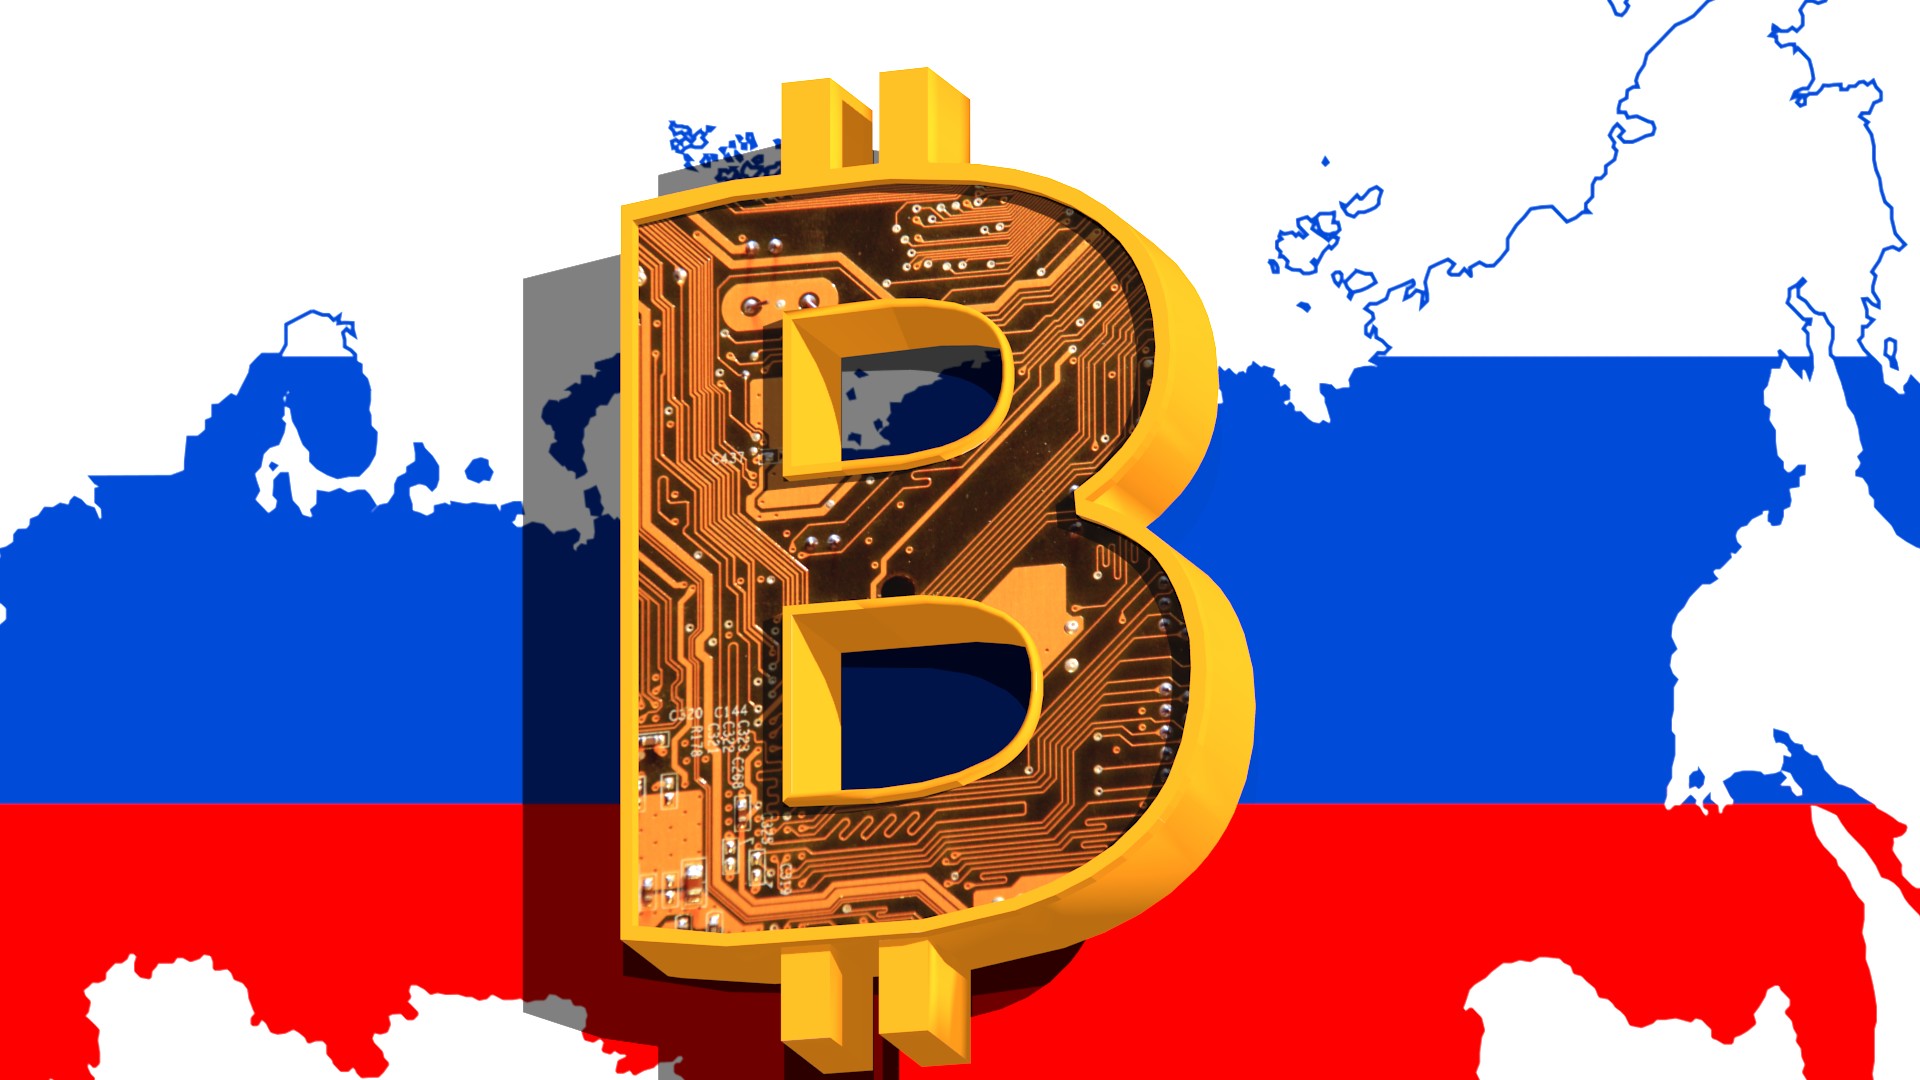 Rus-bilim-adamlari-Bitcoin-madenciligi-yaparken-yakalandi.jpg